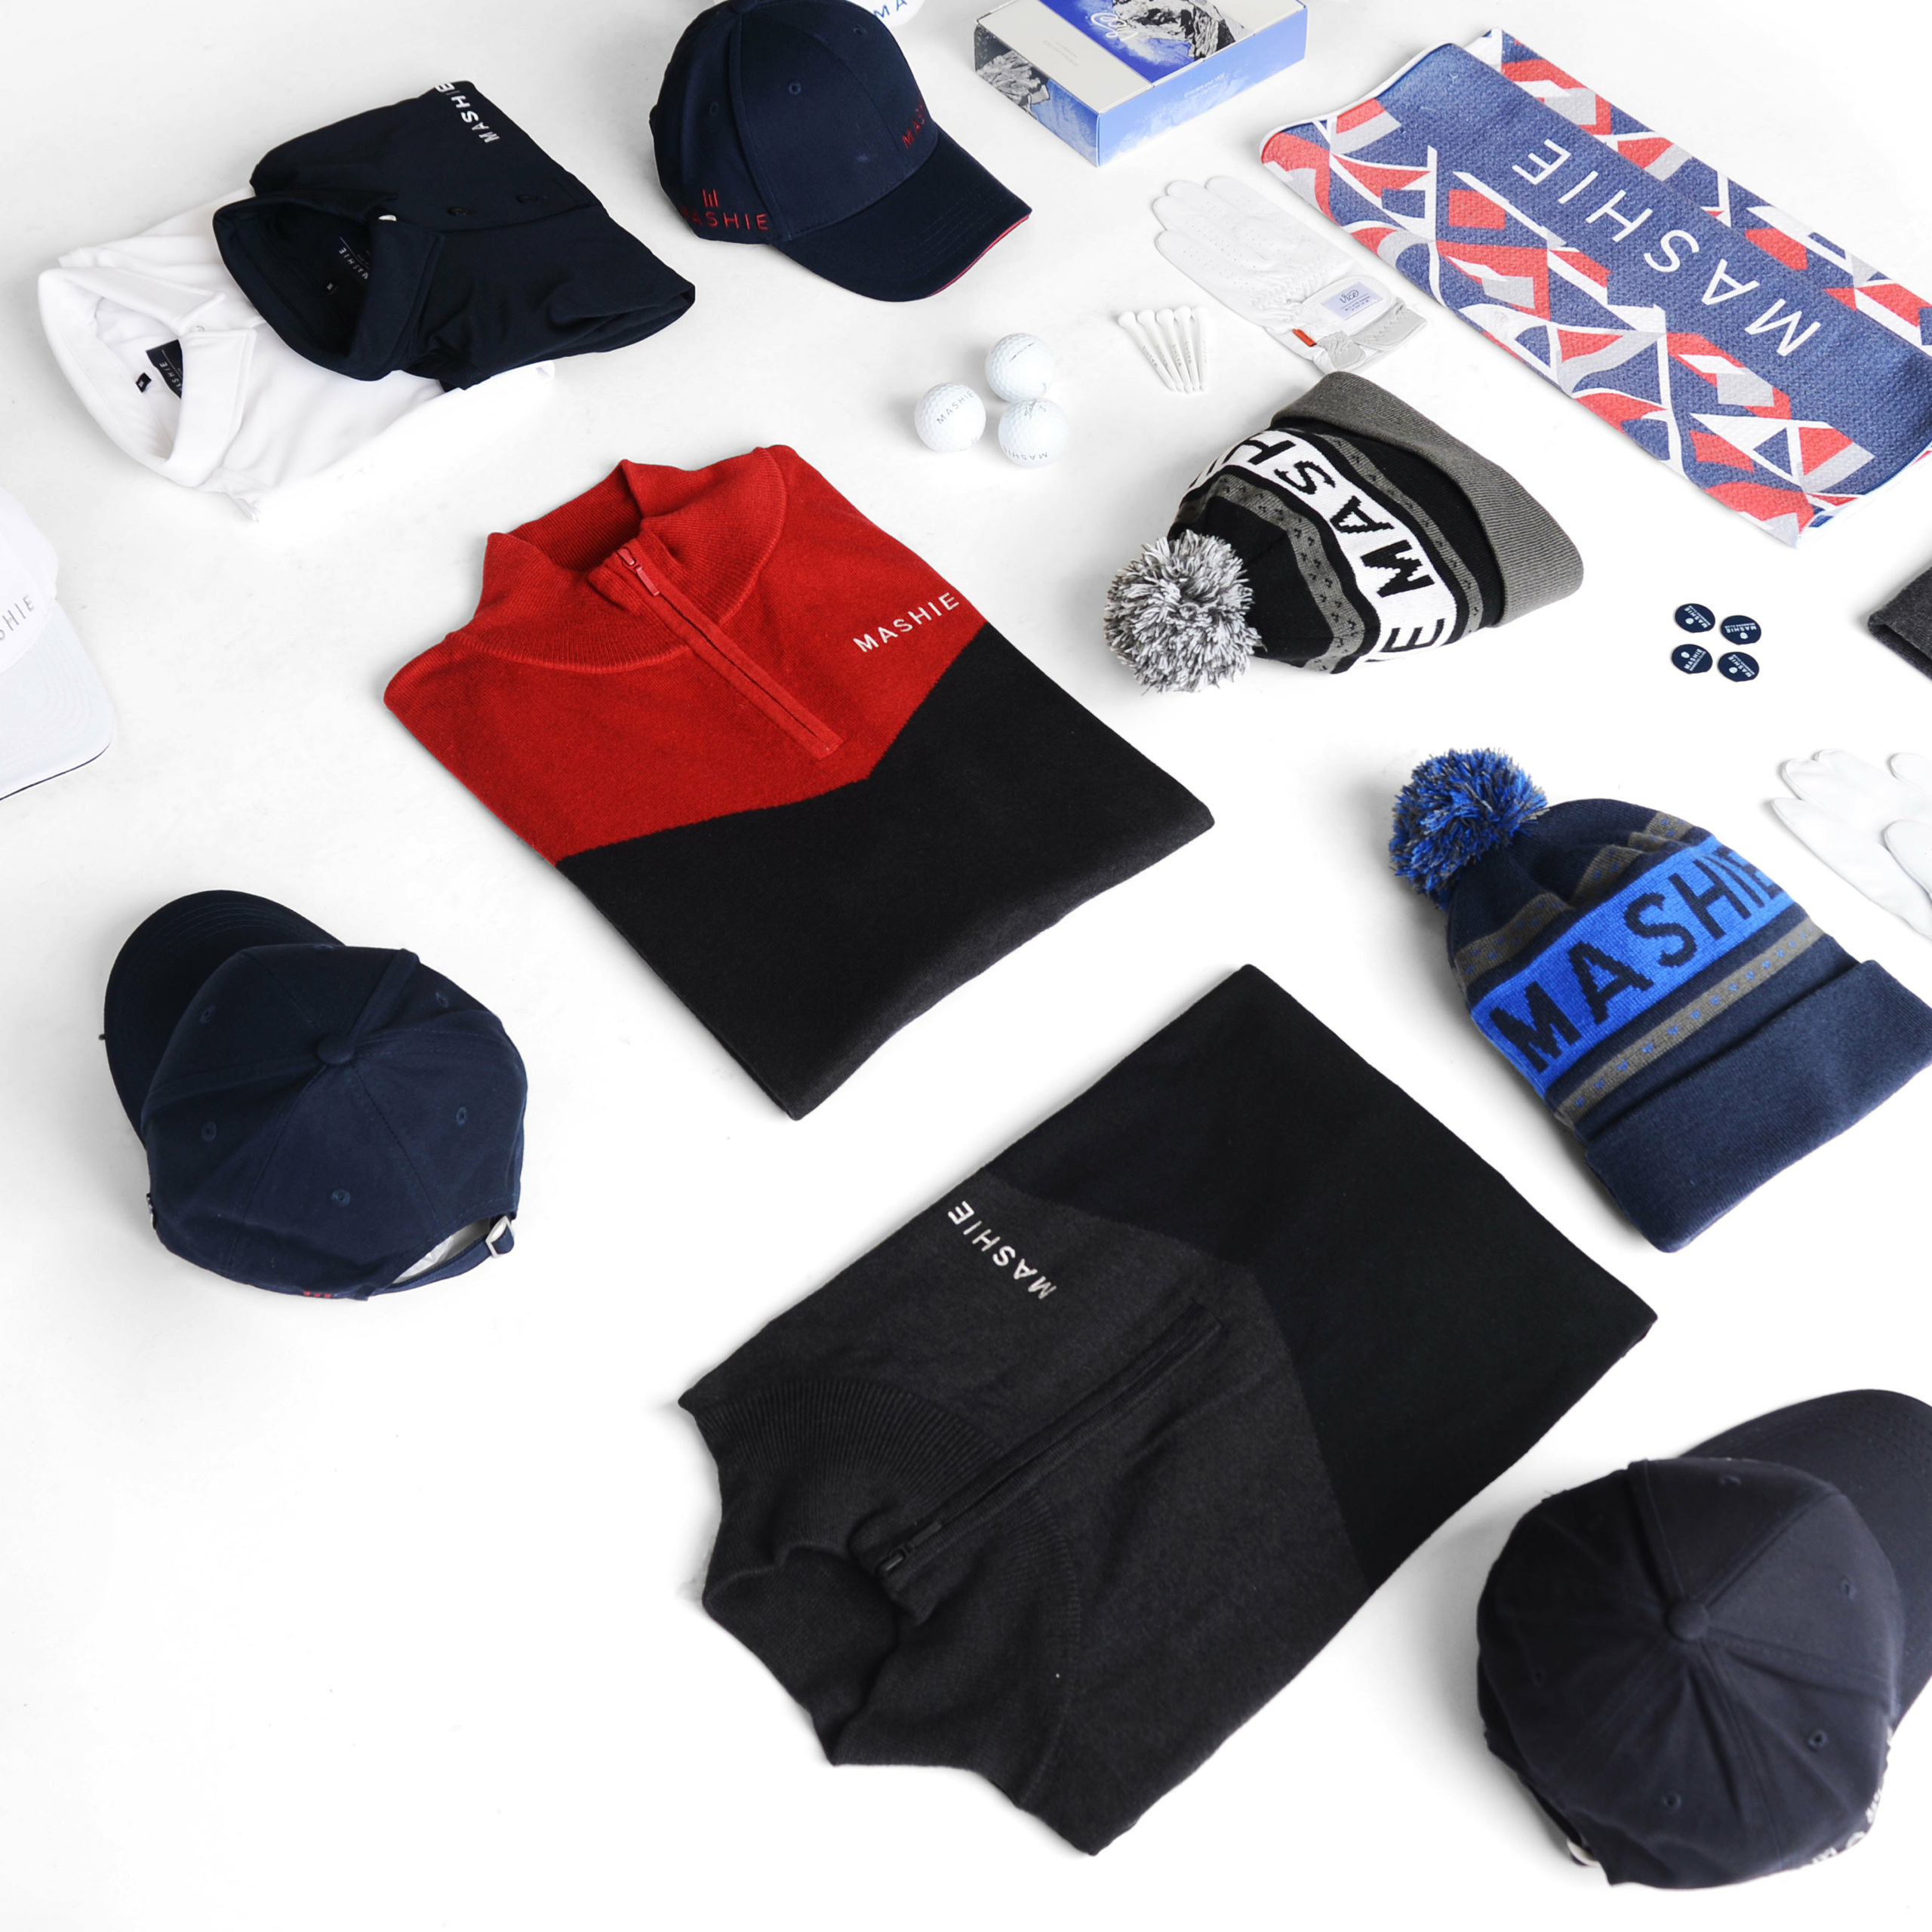 MASHIE Golf Clothing - Clothing Ambassador Pack Offer, £300 of clothing ...